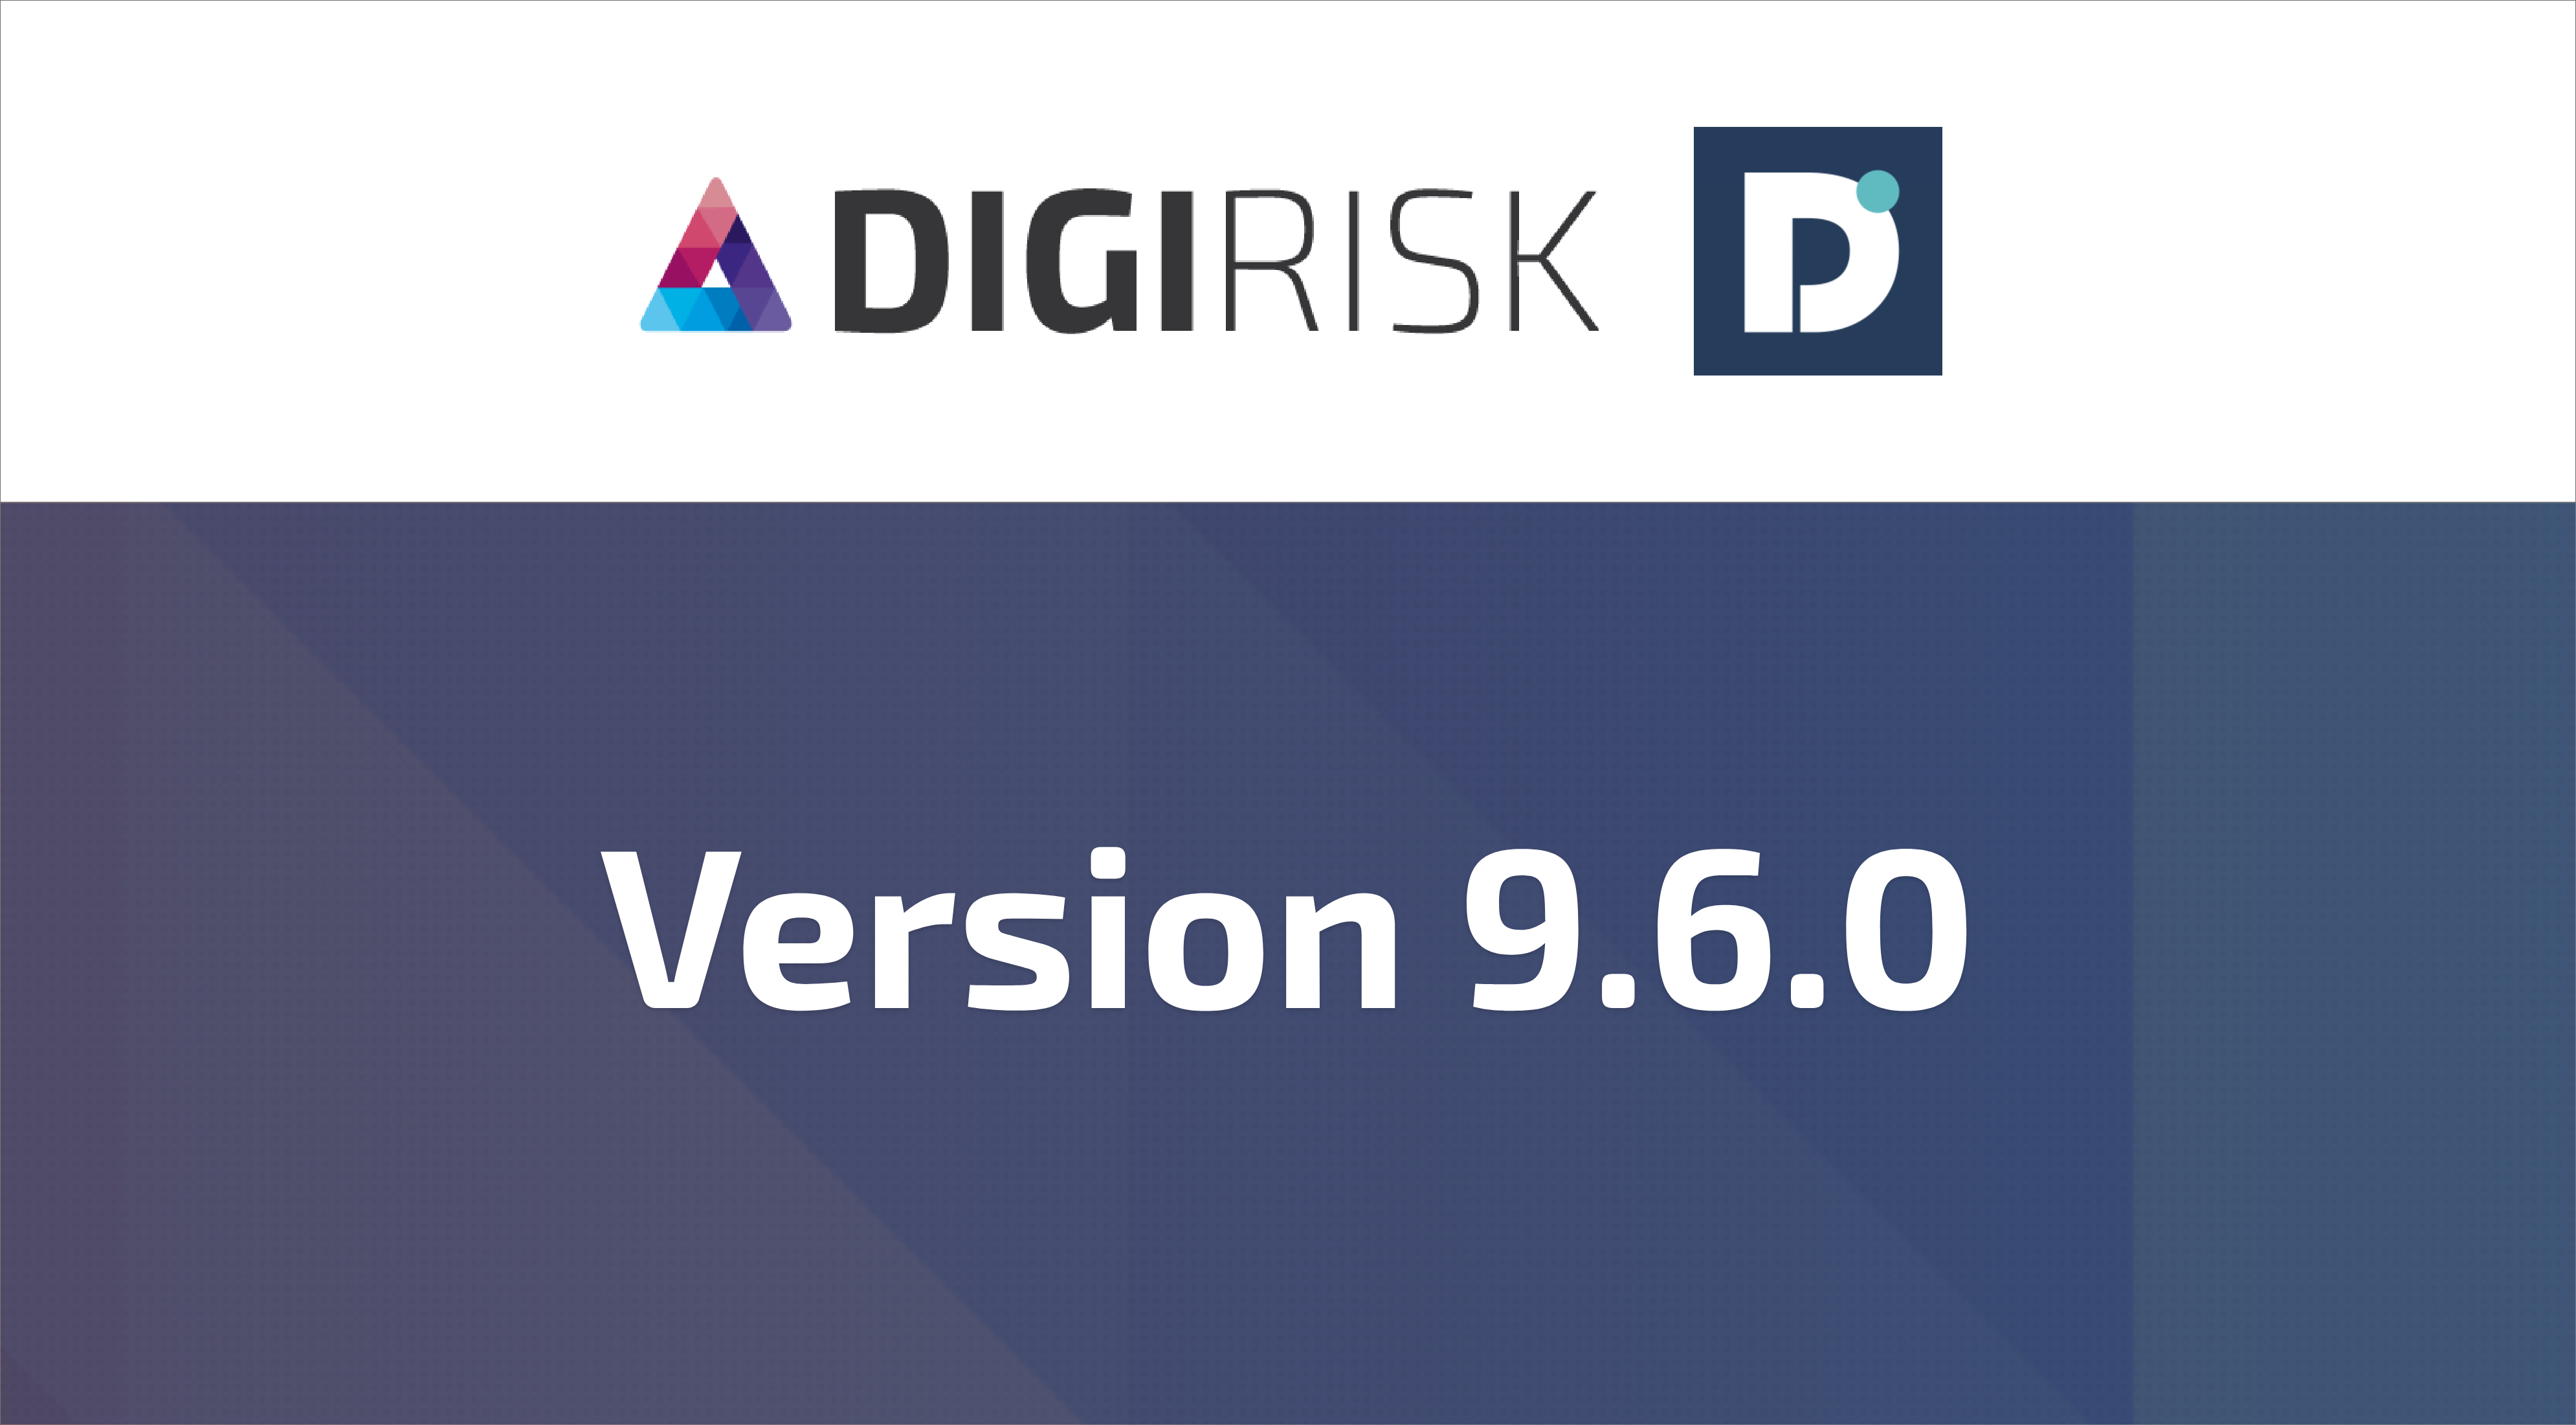 DigiRisk version 9.6.0